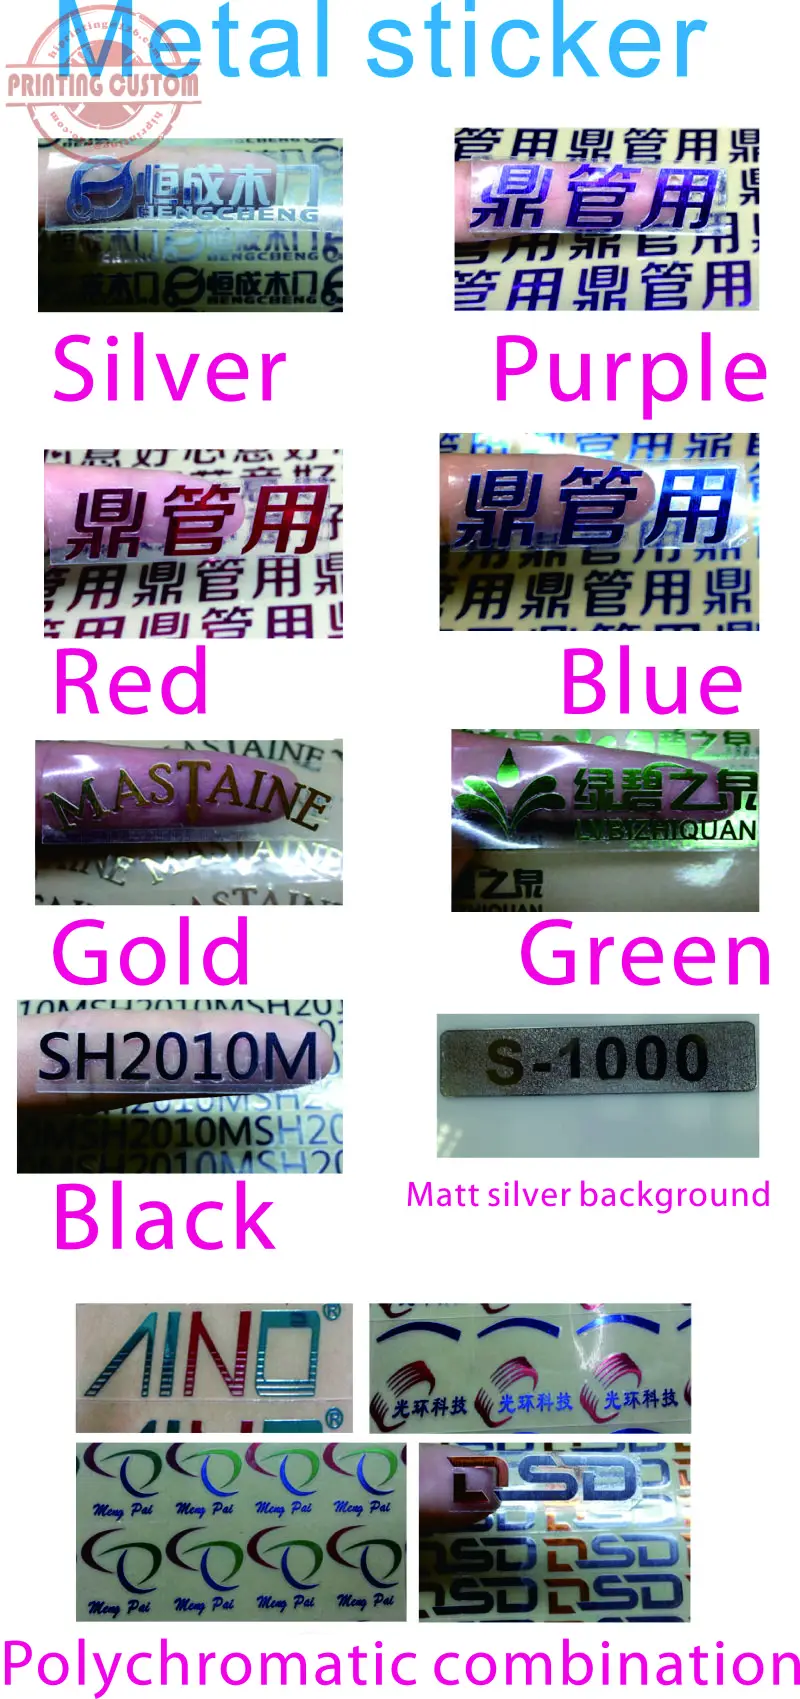 Высокое качество клейкая этикетка наклейка на заказ печатная упаковочная наклейка для красочной печати офсетной машинной печатью